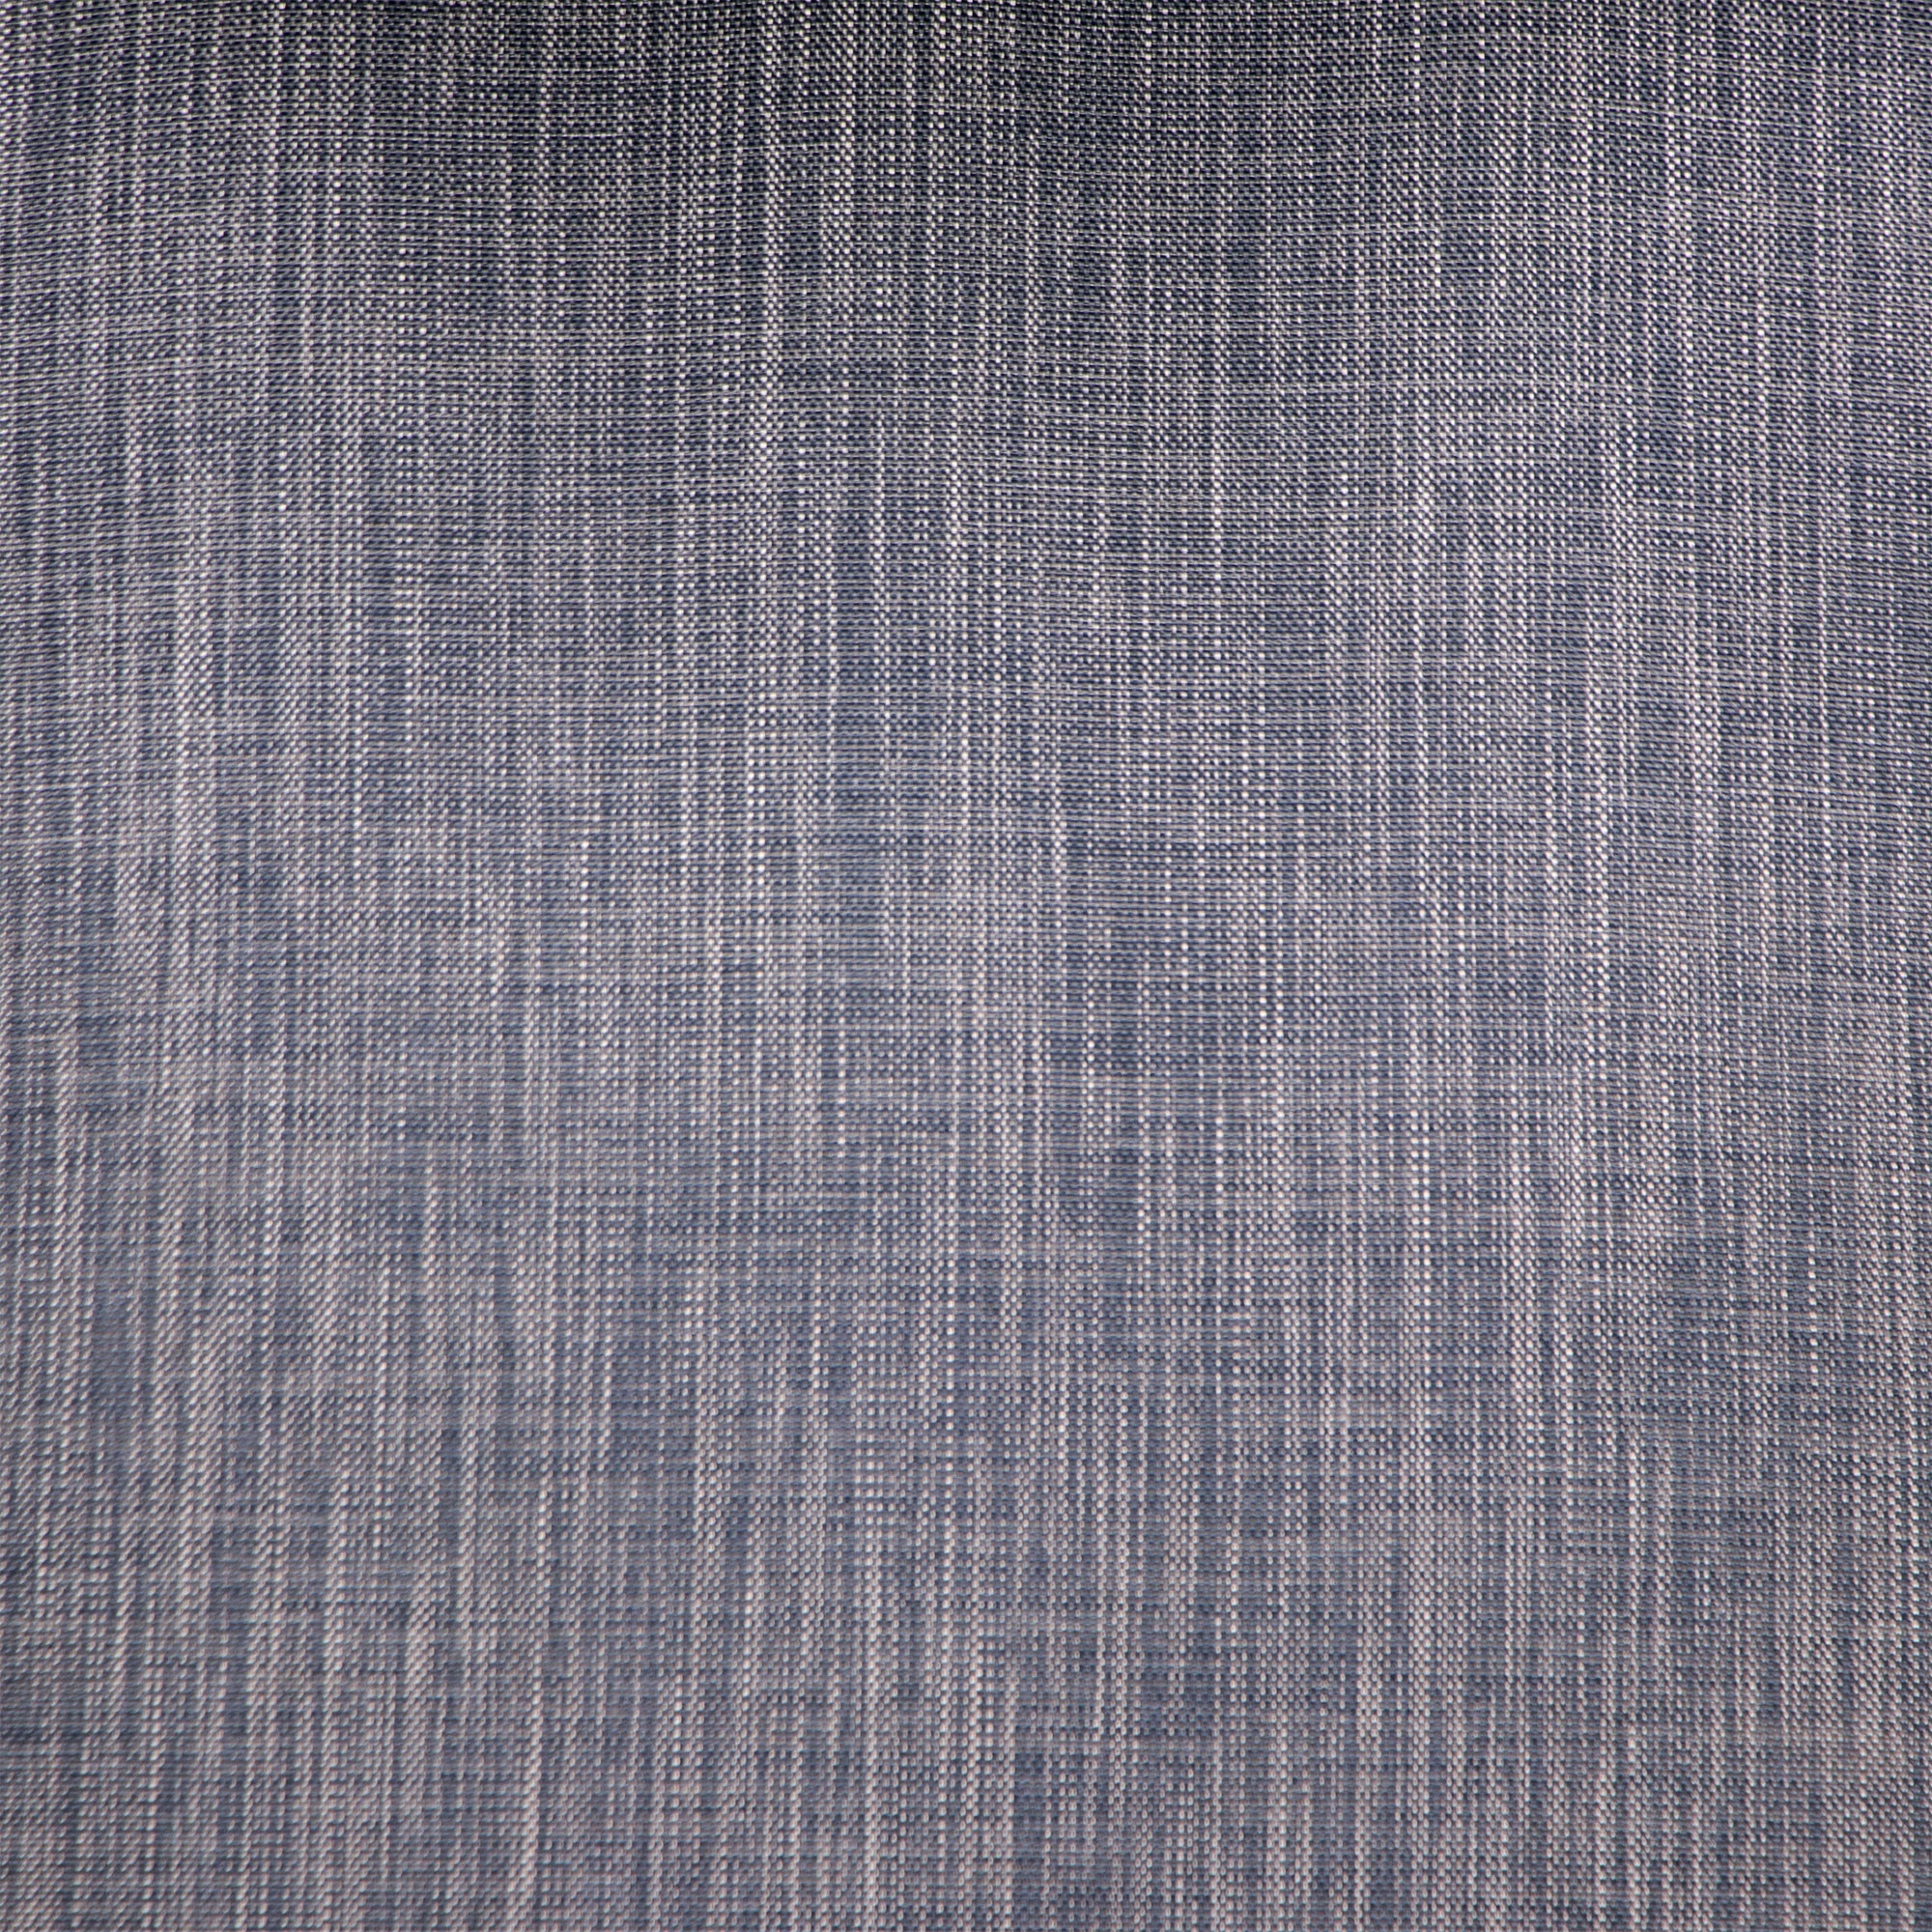 Кресло Konway MB4041 серое, цвет серый - фото 7